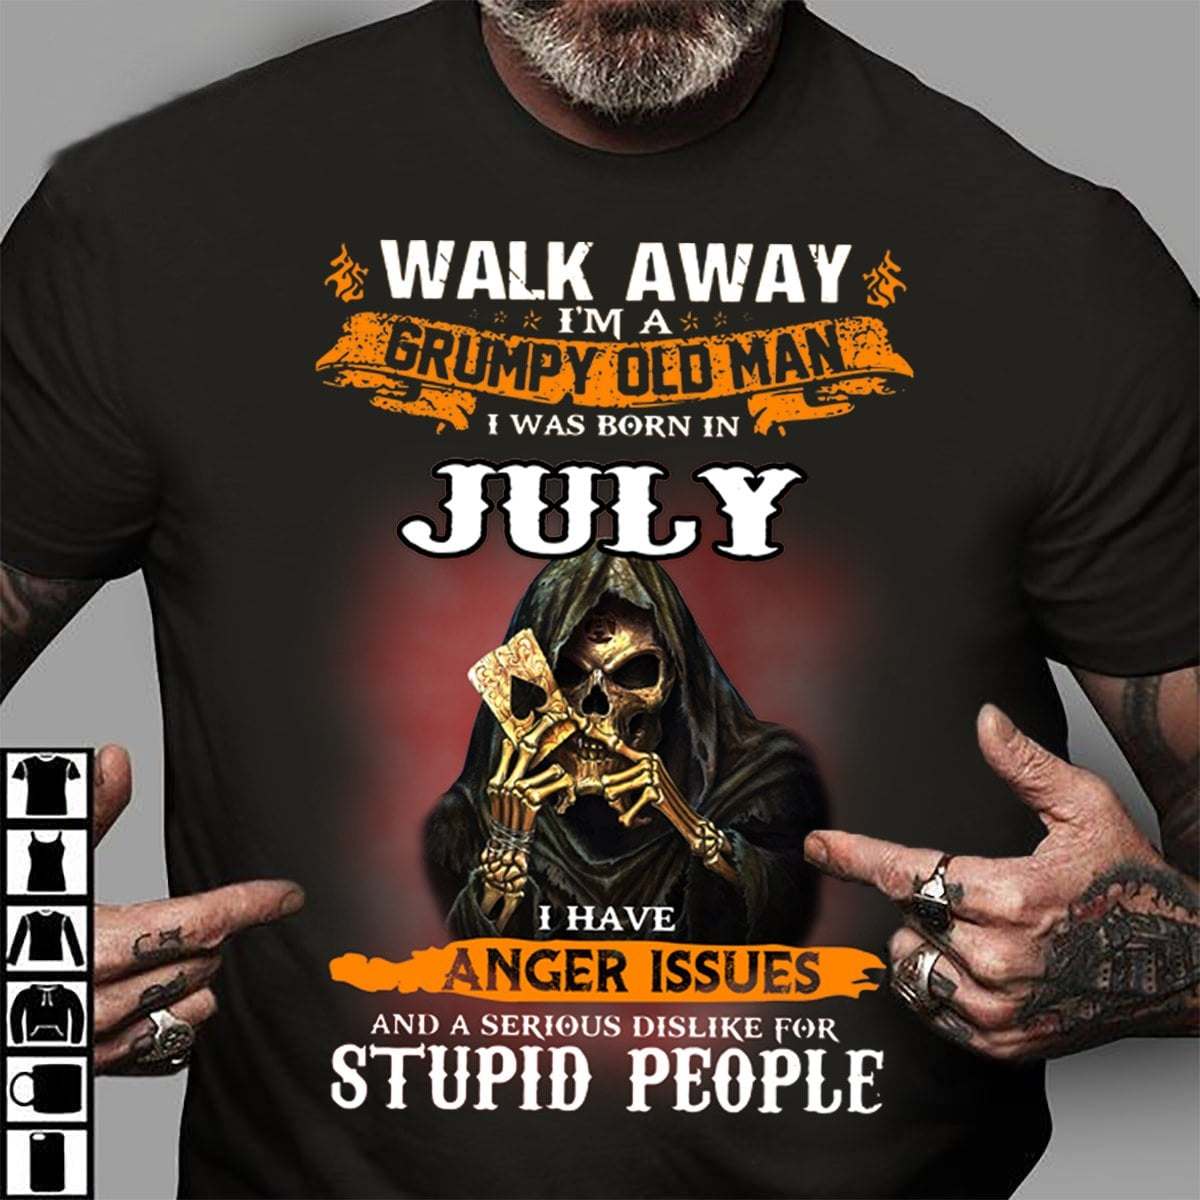 Walk away I'm a grumpy old man I was born in July - Black evil